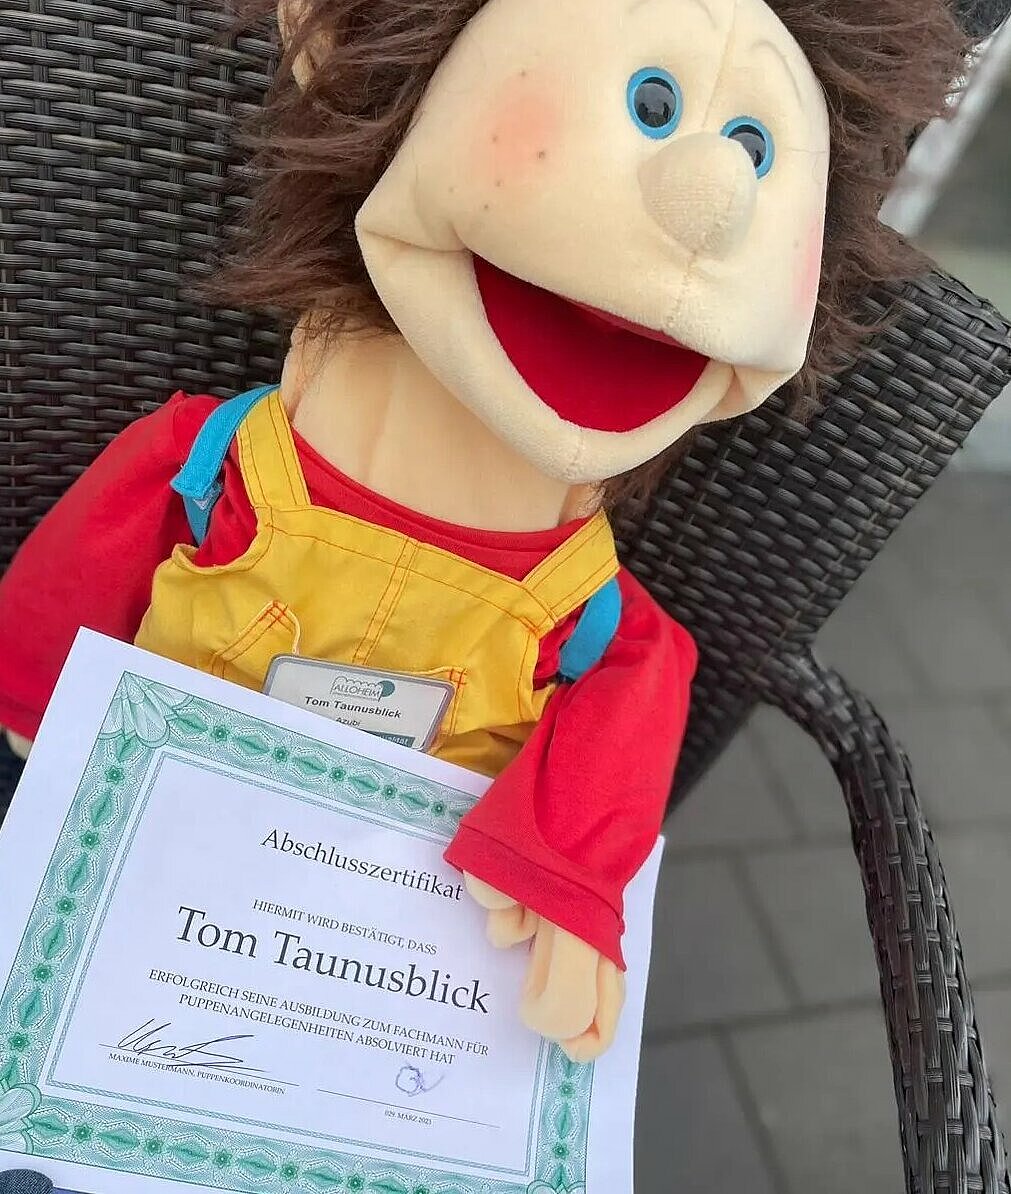 Tom Taunusblick mit seinem Abschlusszertifikat